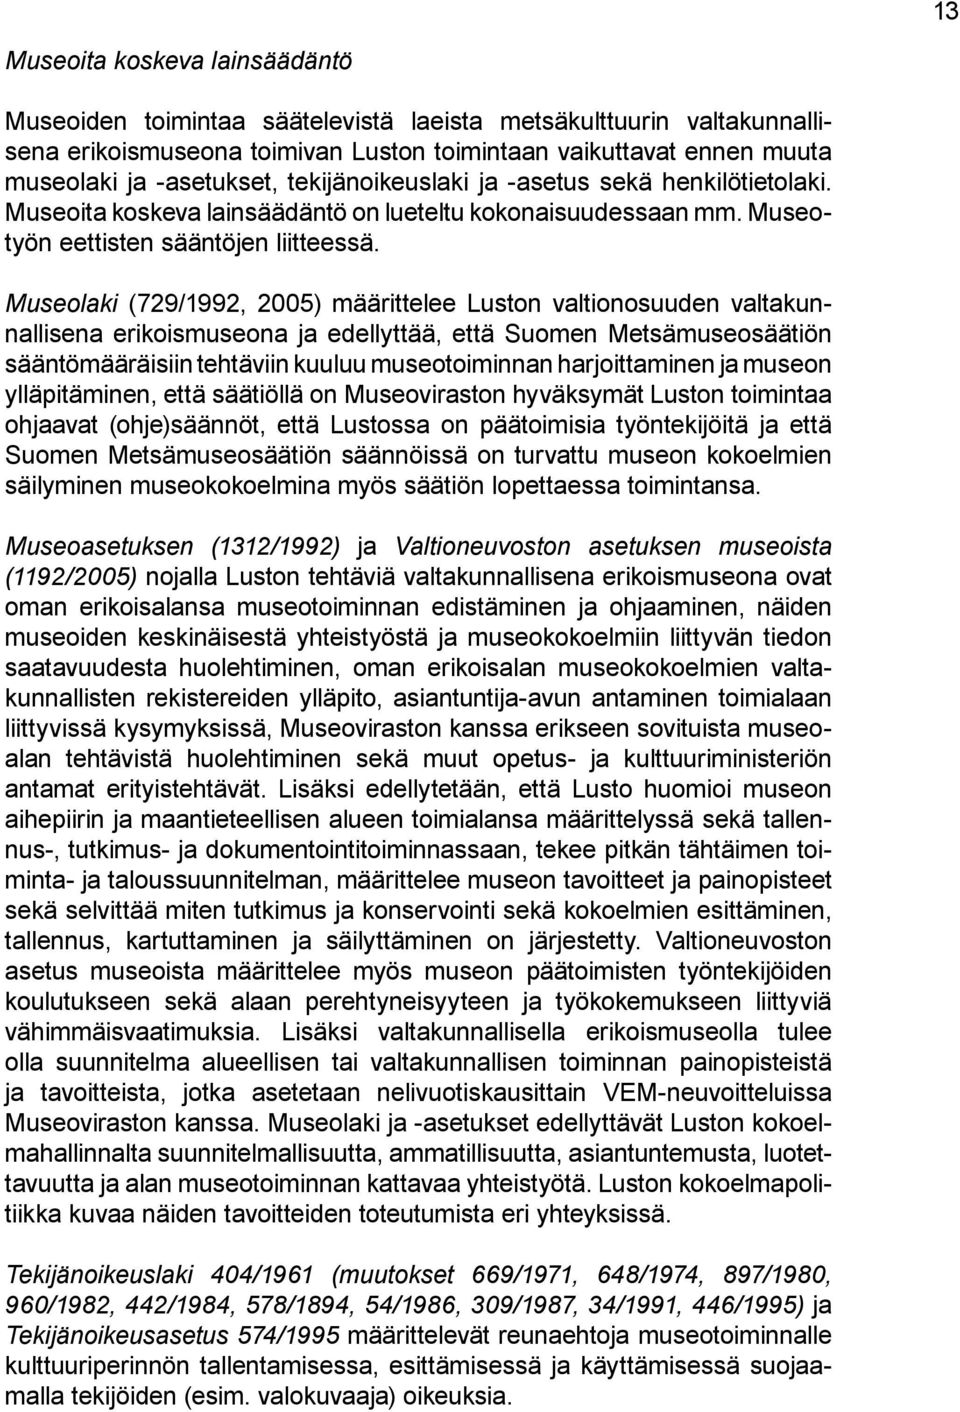 Museolaki (729/1992, 2005) määrittelee Luston valtionosuuden valtakunnallisena erikoismuseona ja edellyttää, että Suomen Metsämuseosäätiön sääntömääräisiin tehtäviin kuuluu museotoiminnan